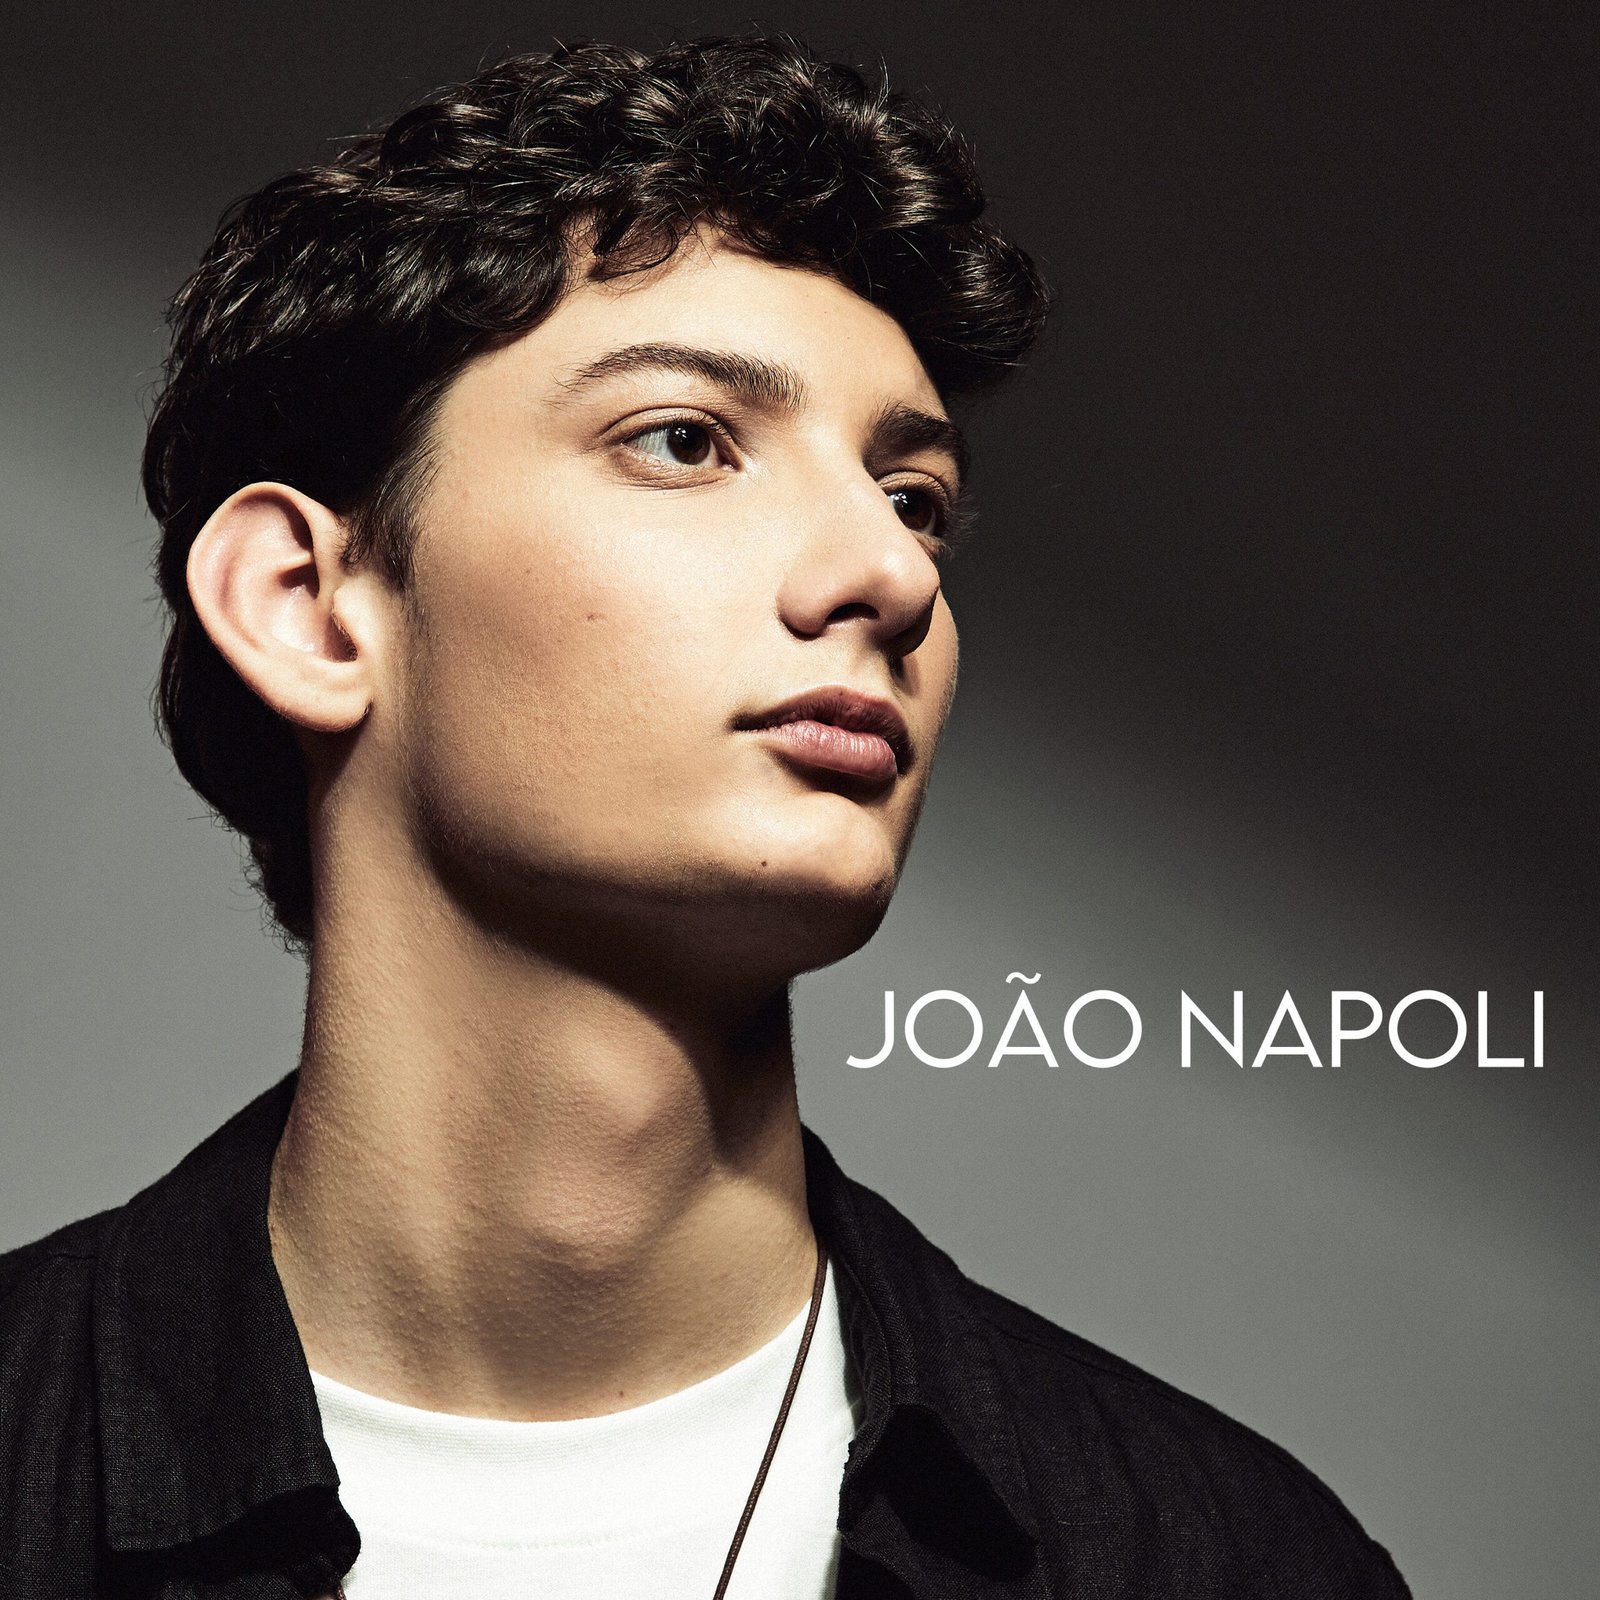 Capa Album Joao Napoli scaled POP CYBER